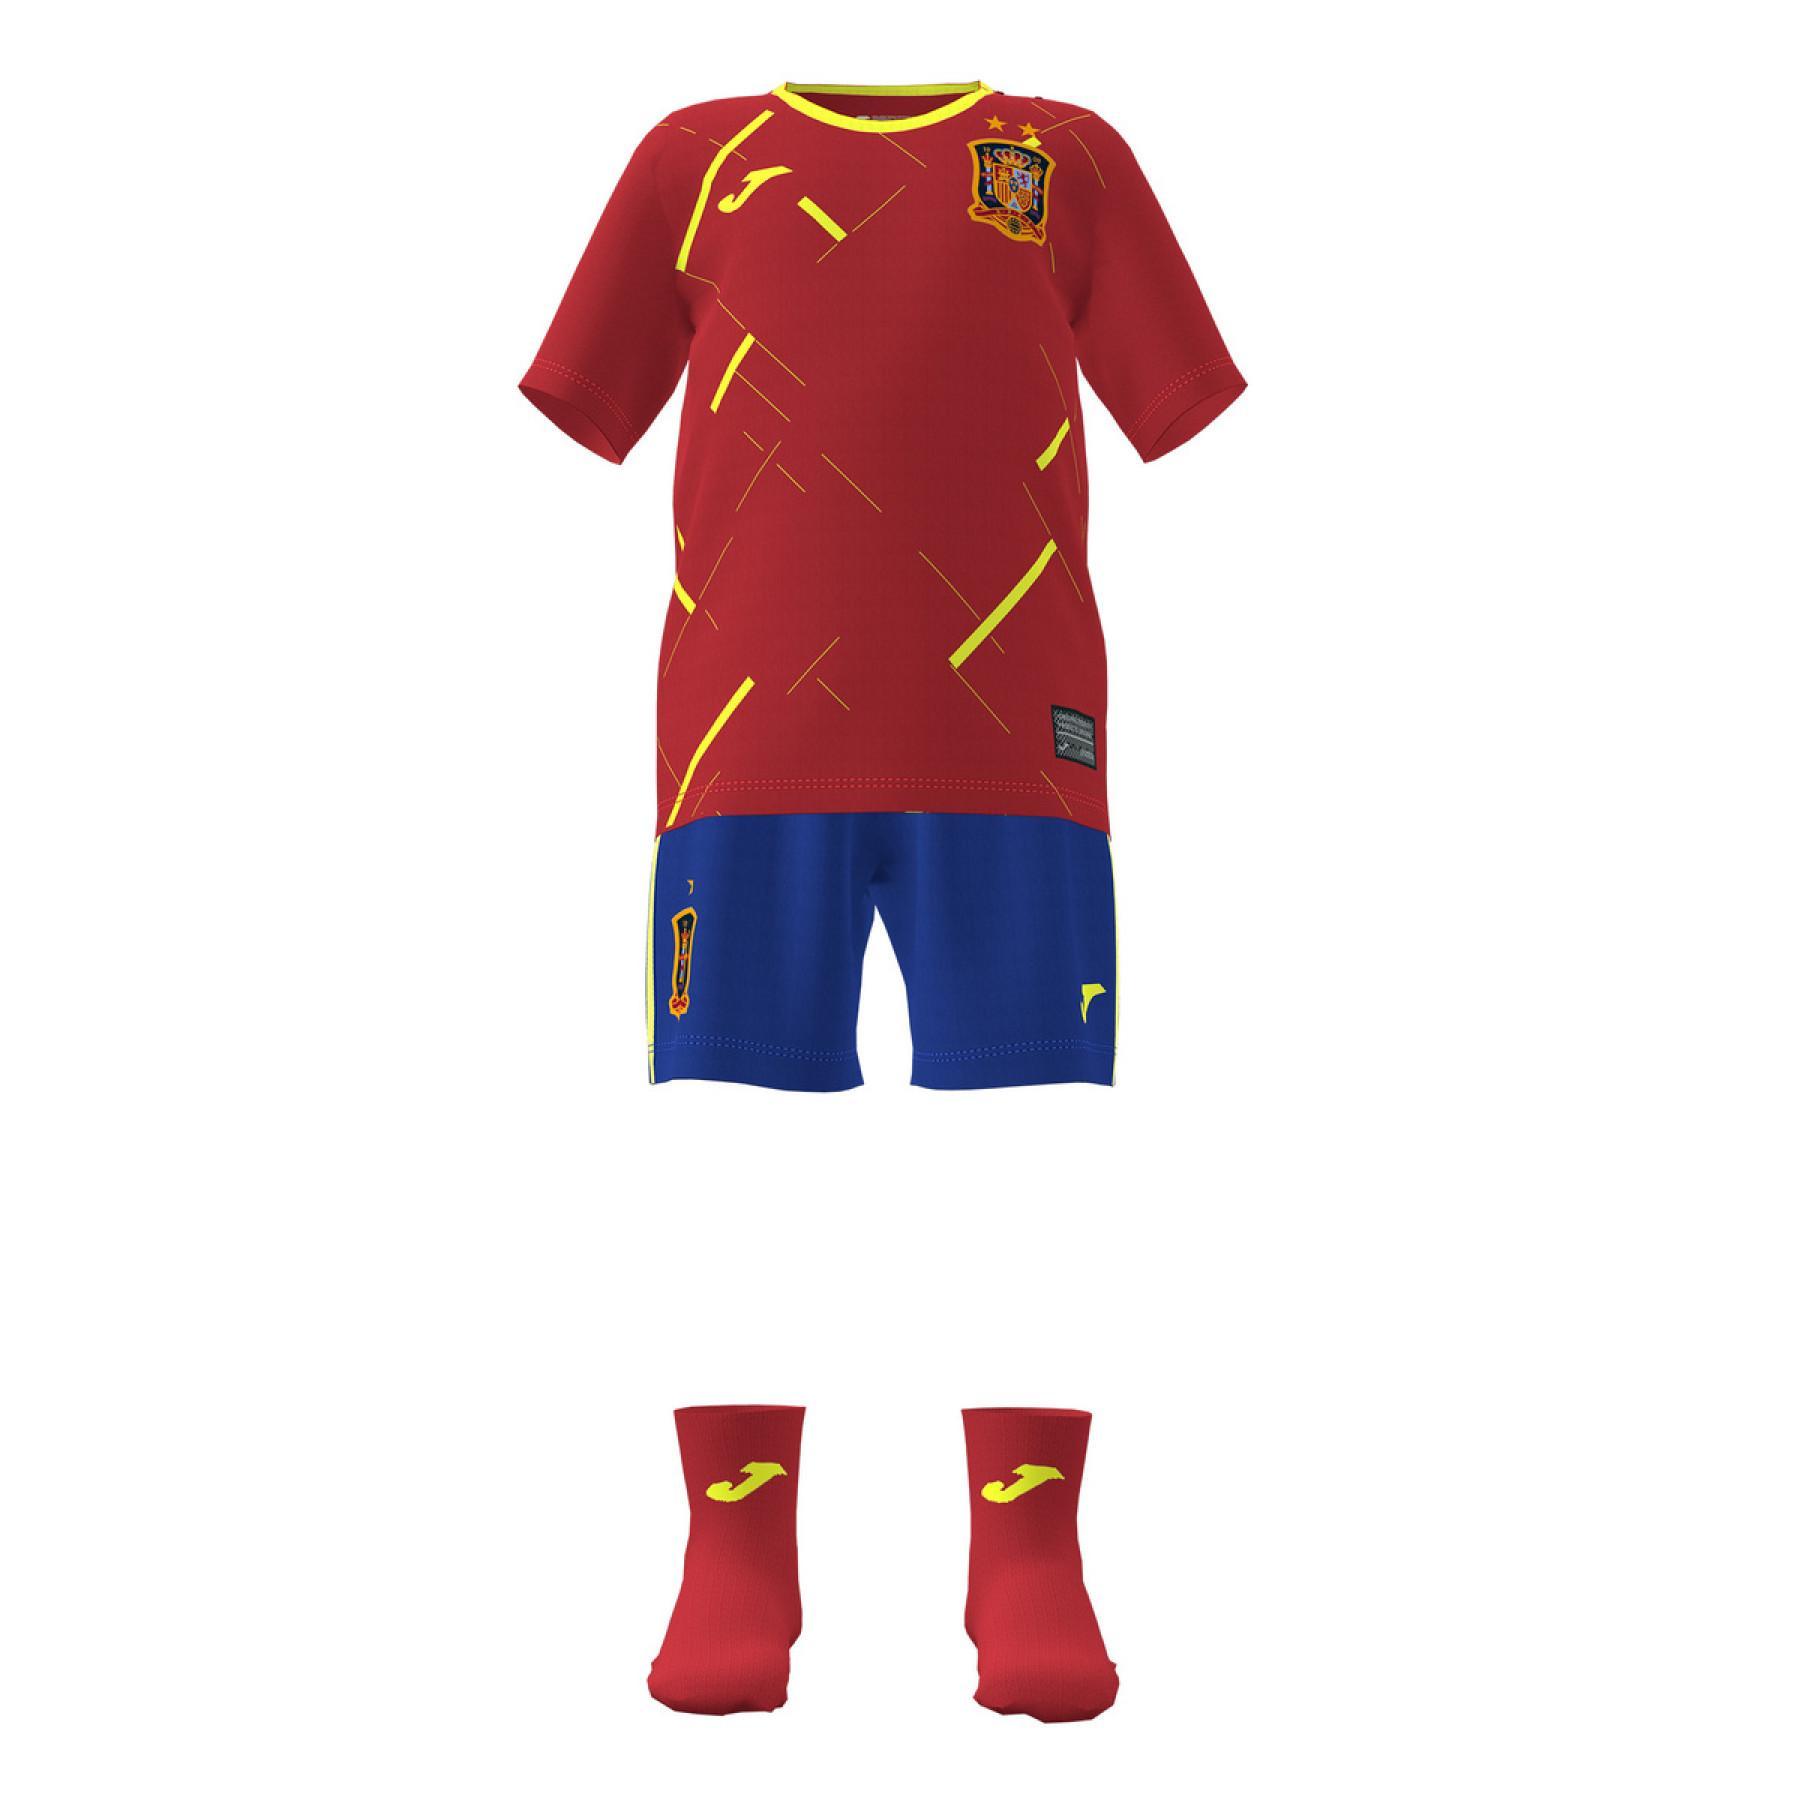 Mini home kit kind Espagne Futsal 2020/21